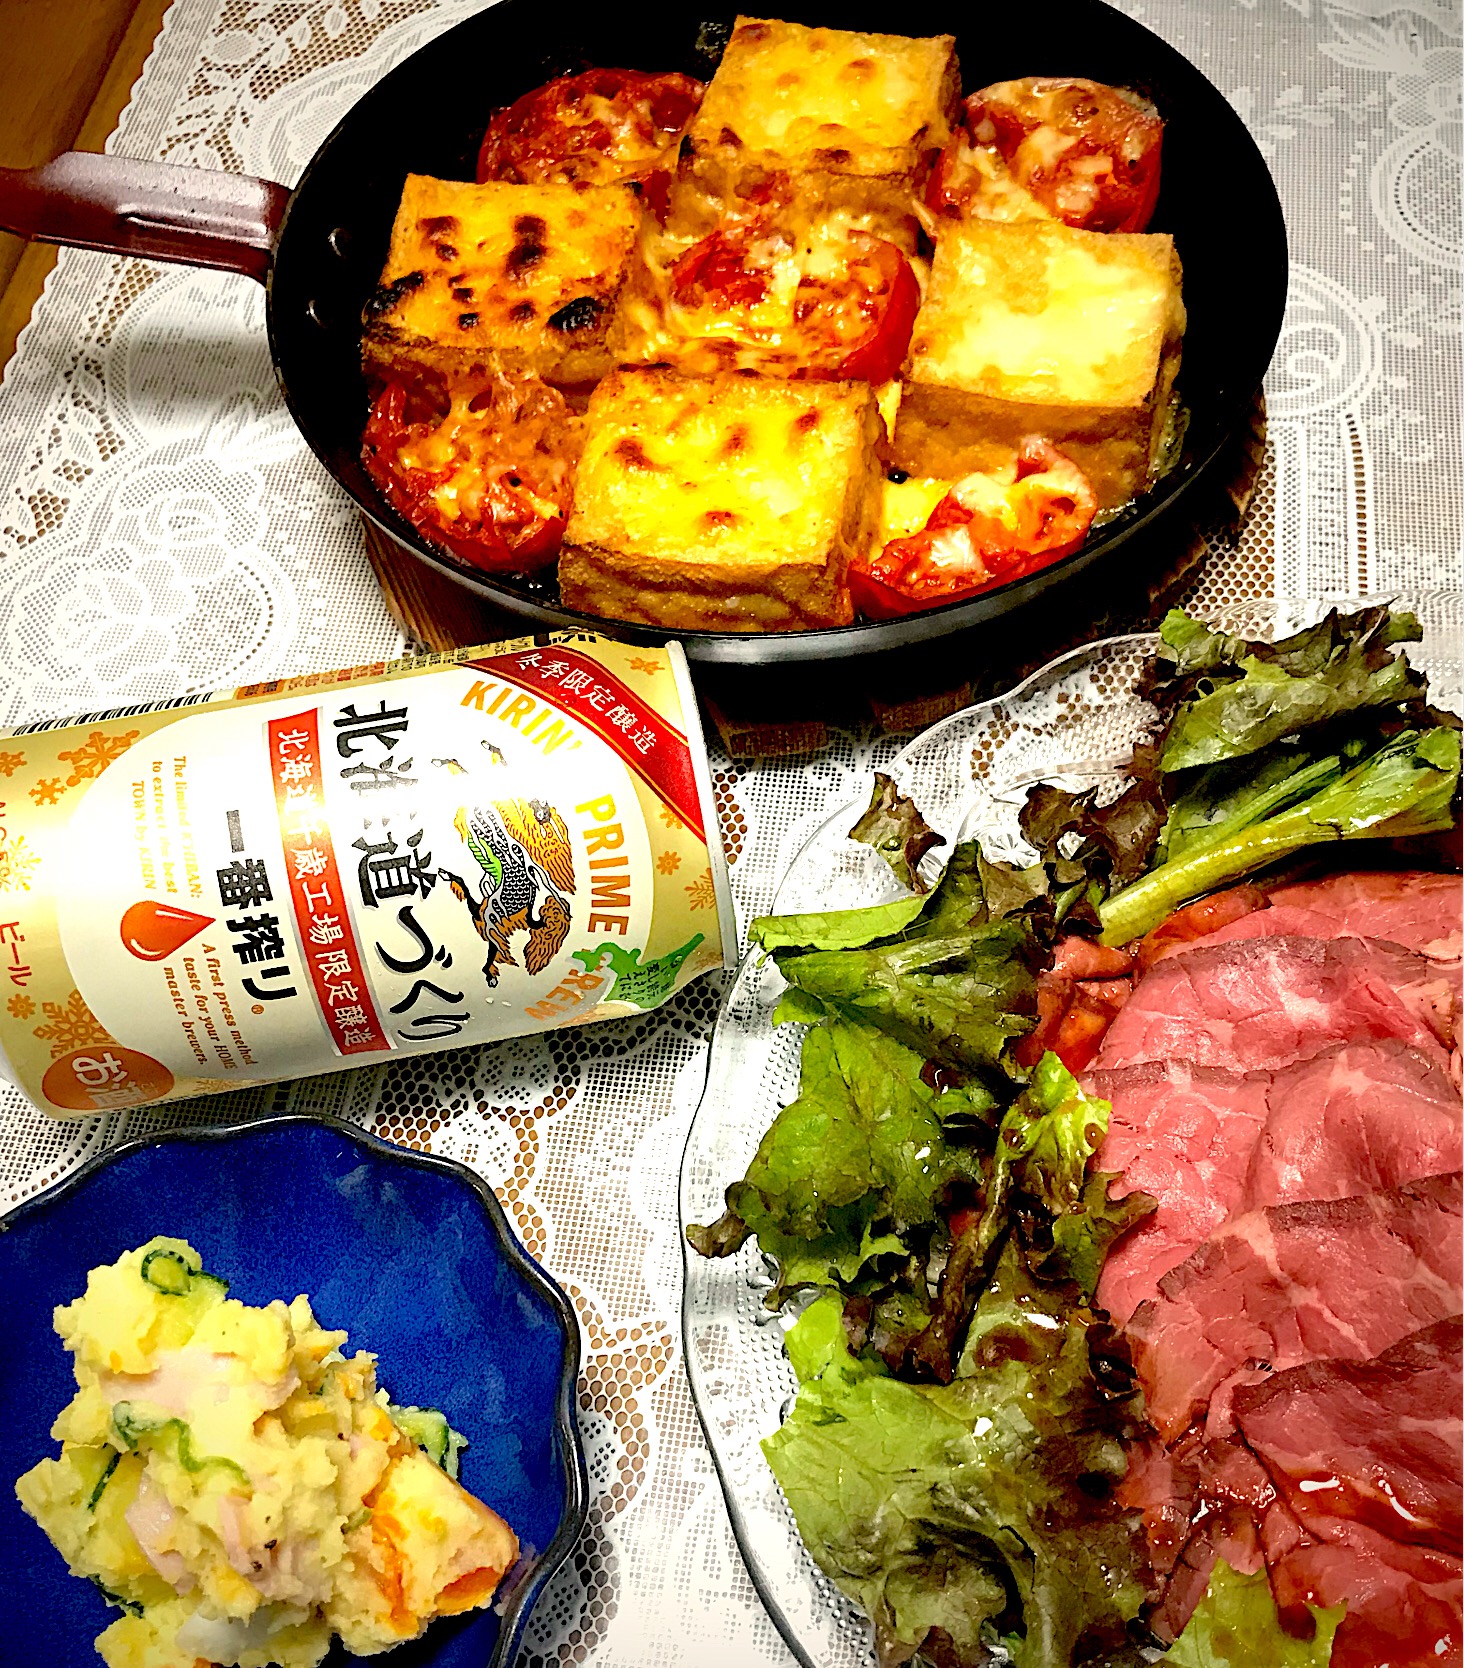 豆腐とトマトのチーズ焼き
ローストビーフサラダ